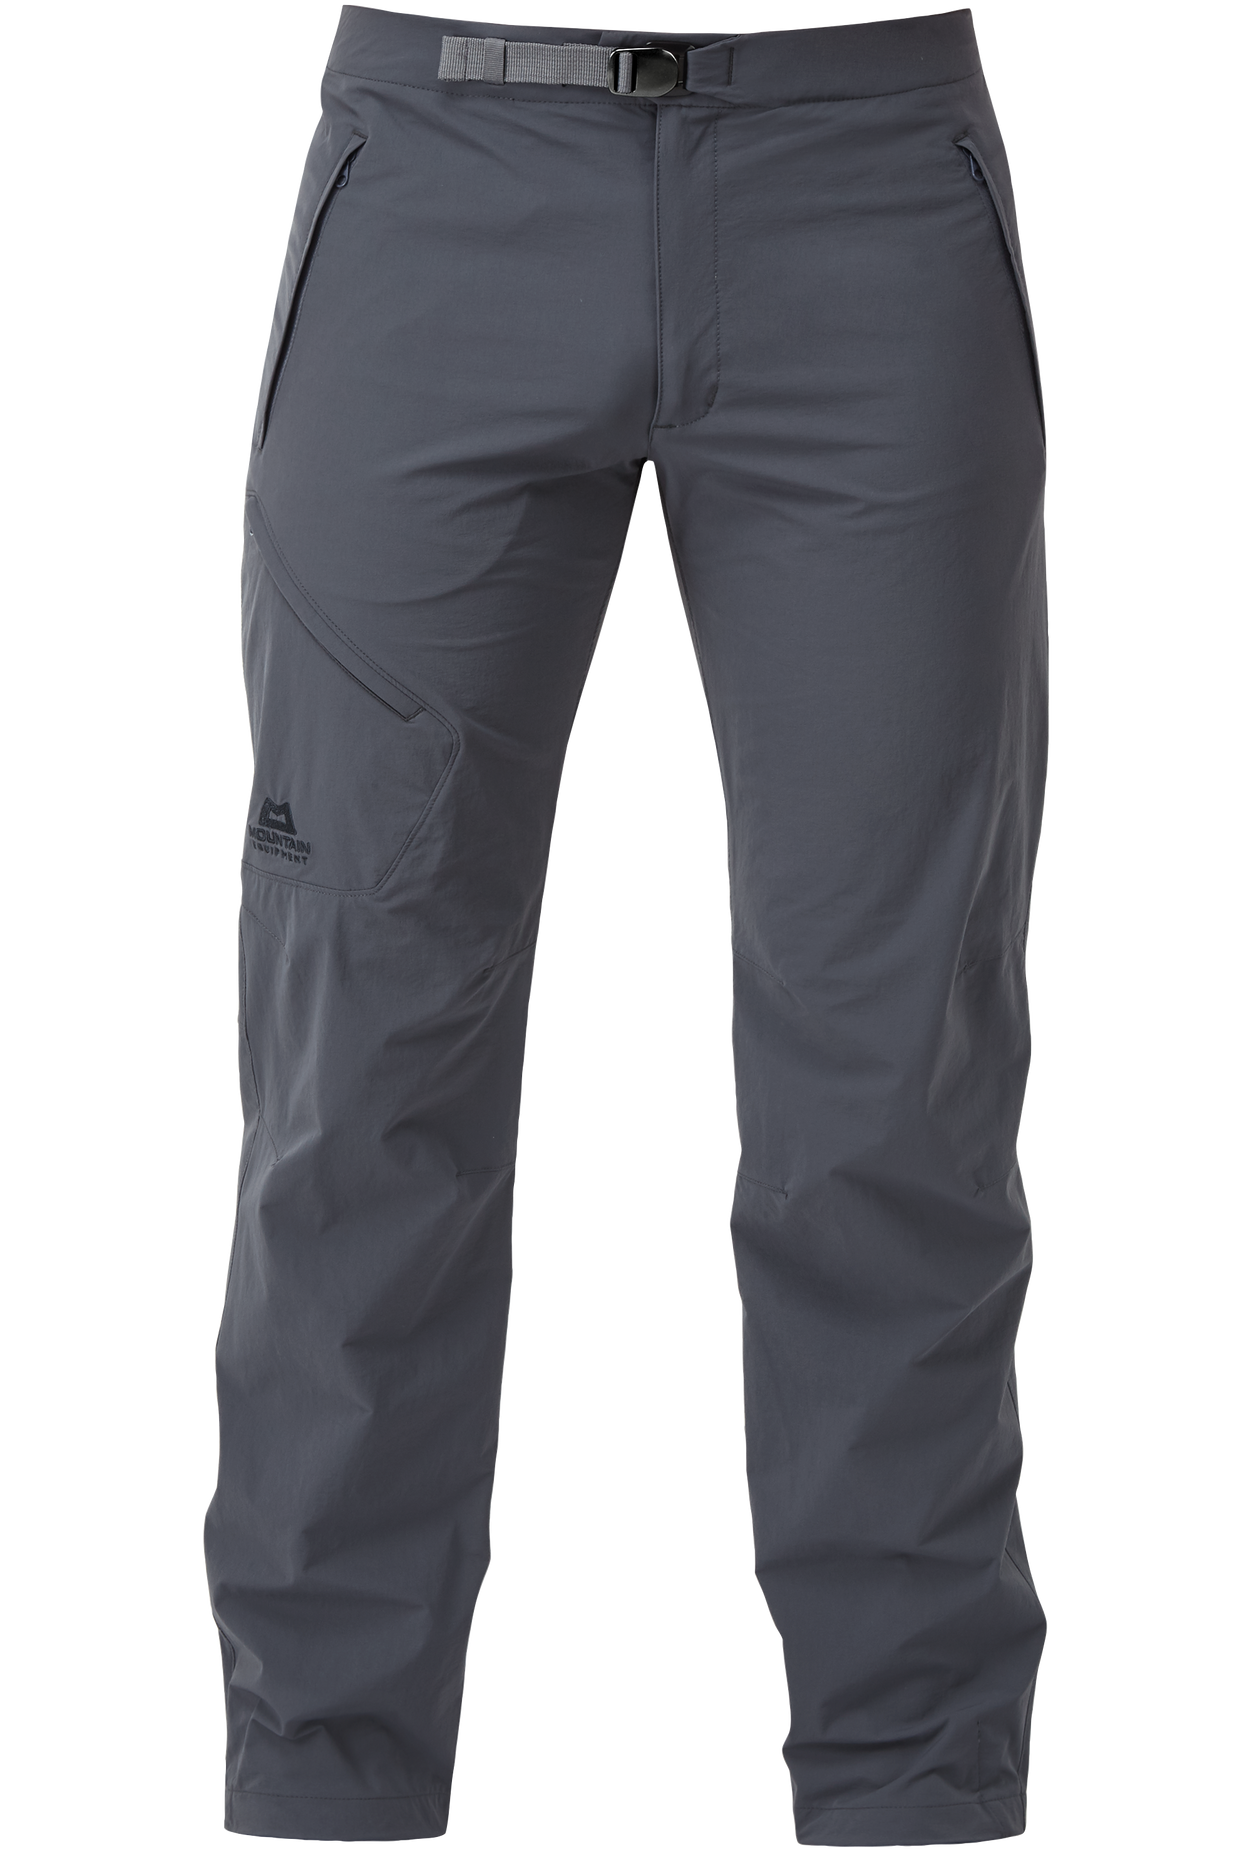 Mountain Equipment pánské softshellové kalhoty Comici Pant - zkrácené Barva: Ombre Blue, Velikost: 38/XXL